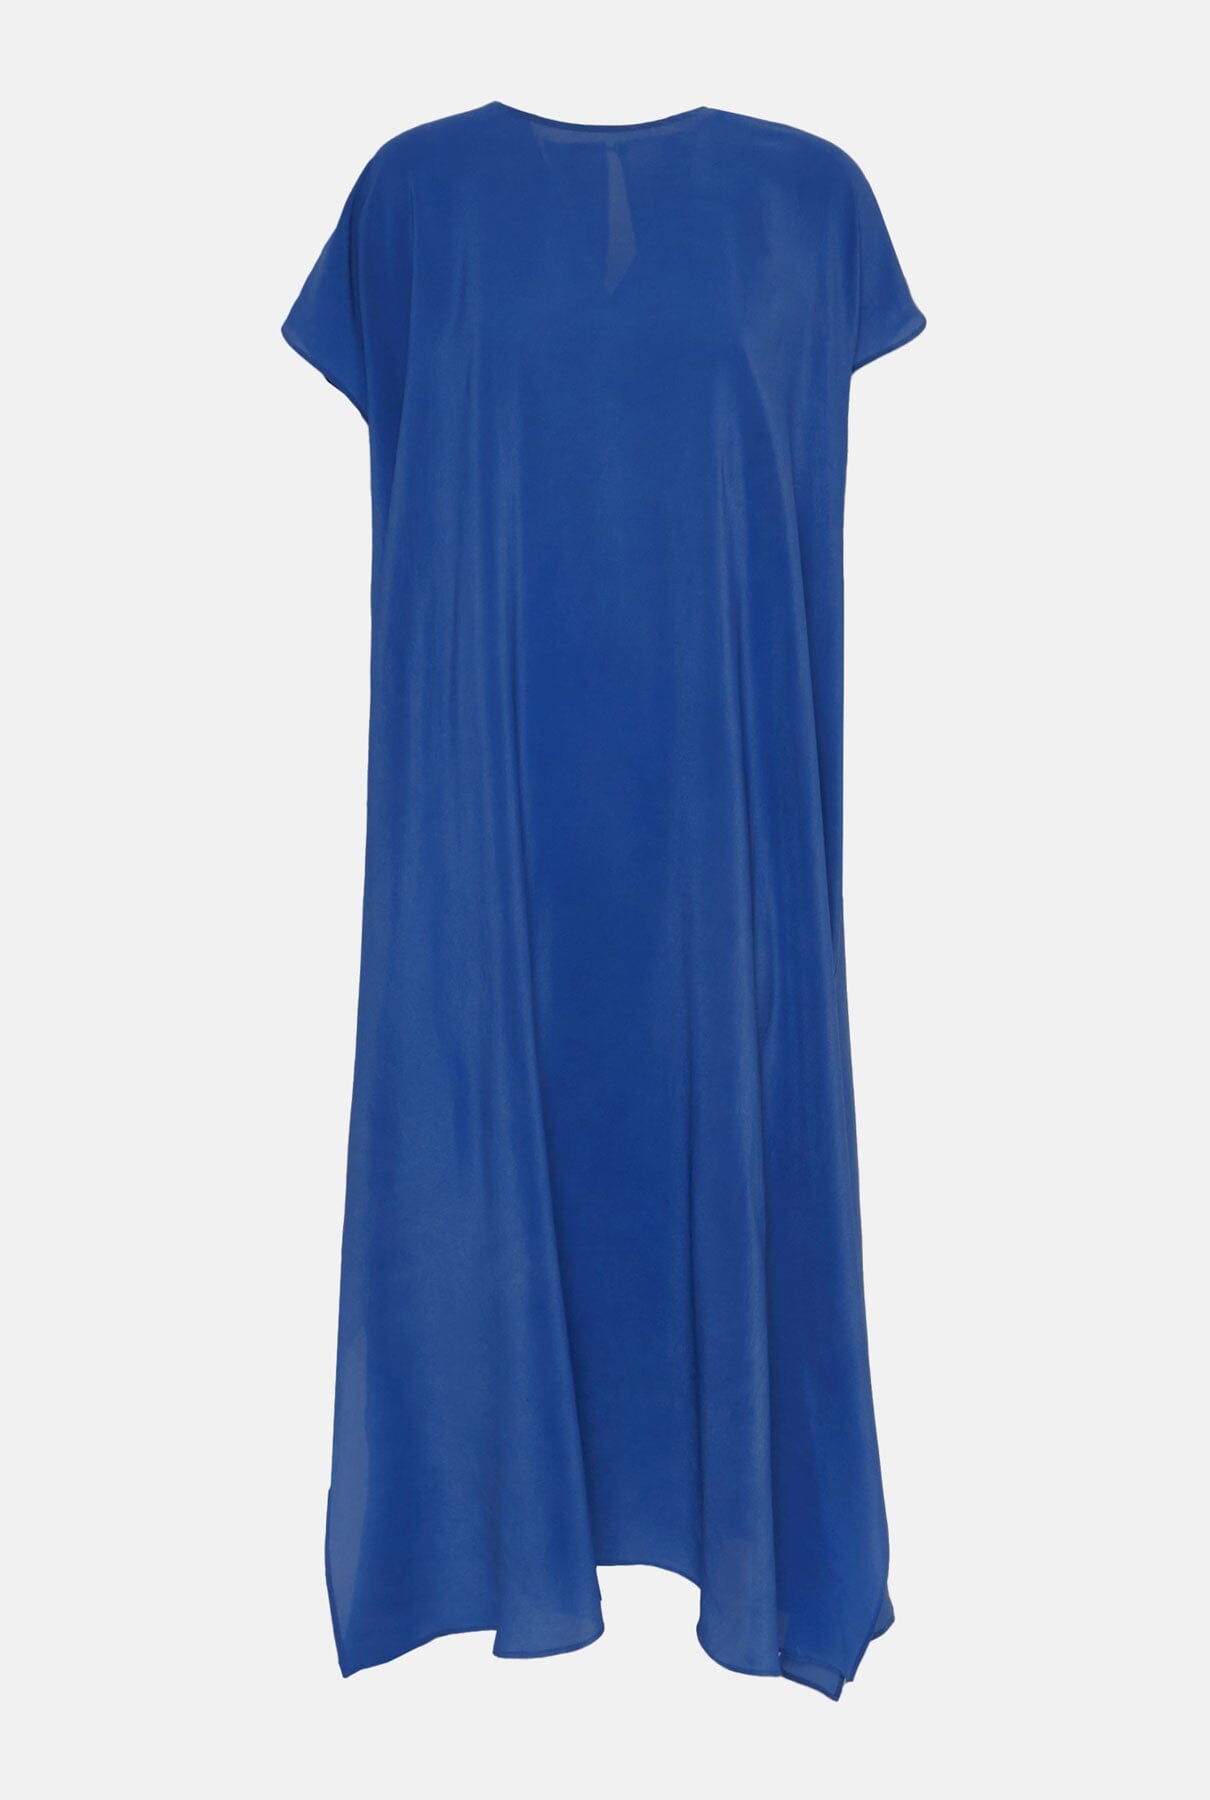 Fatima Long Dress Blue Indigo Dresses Atelier Aletheia 